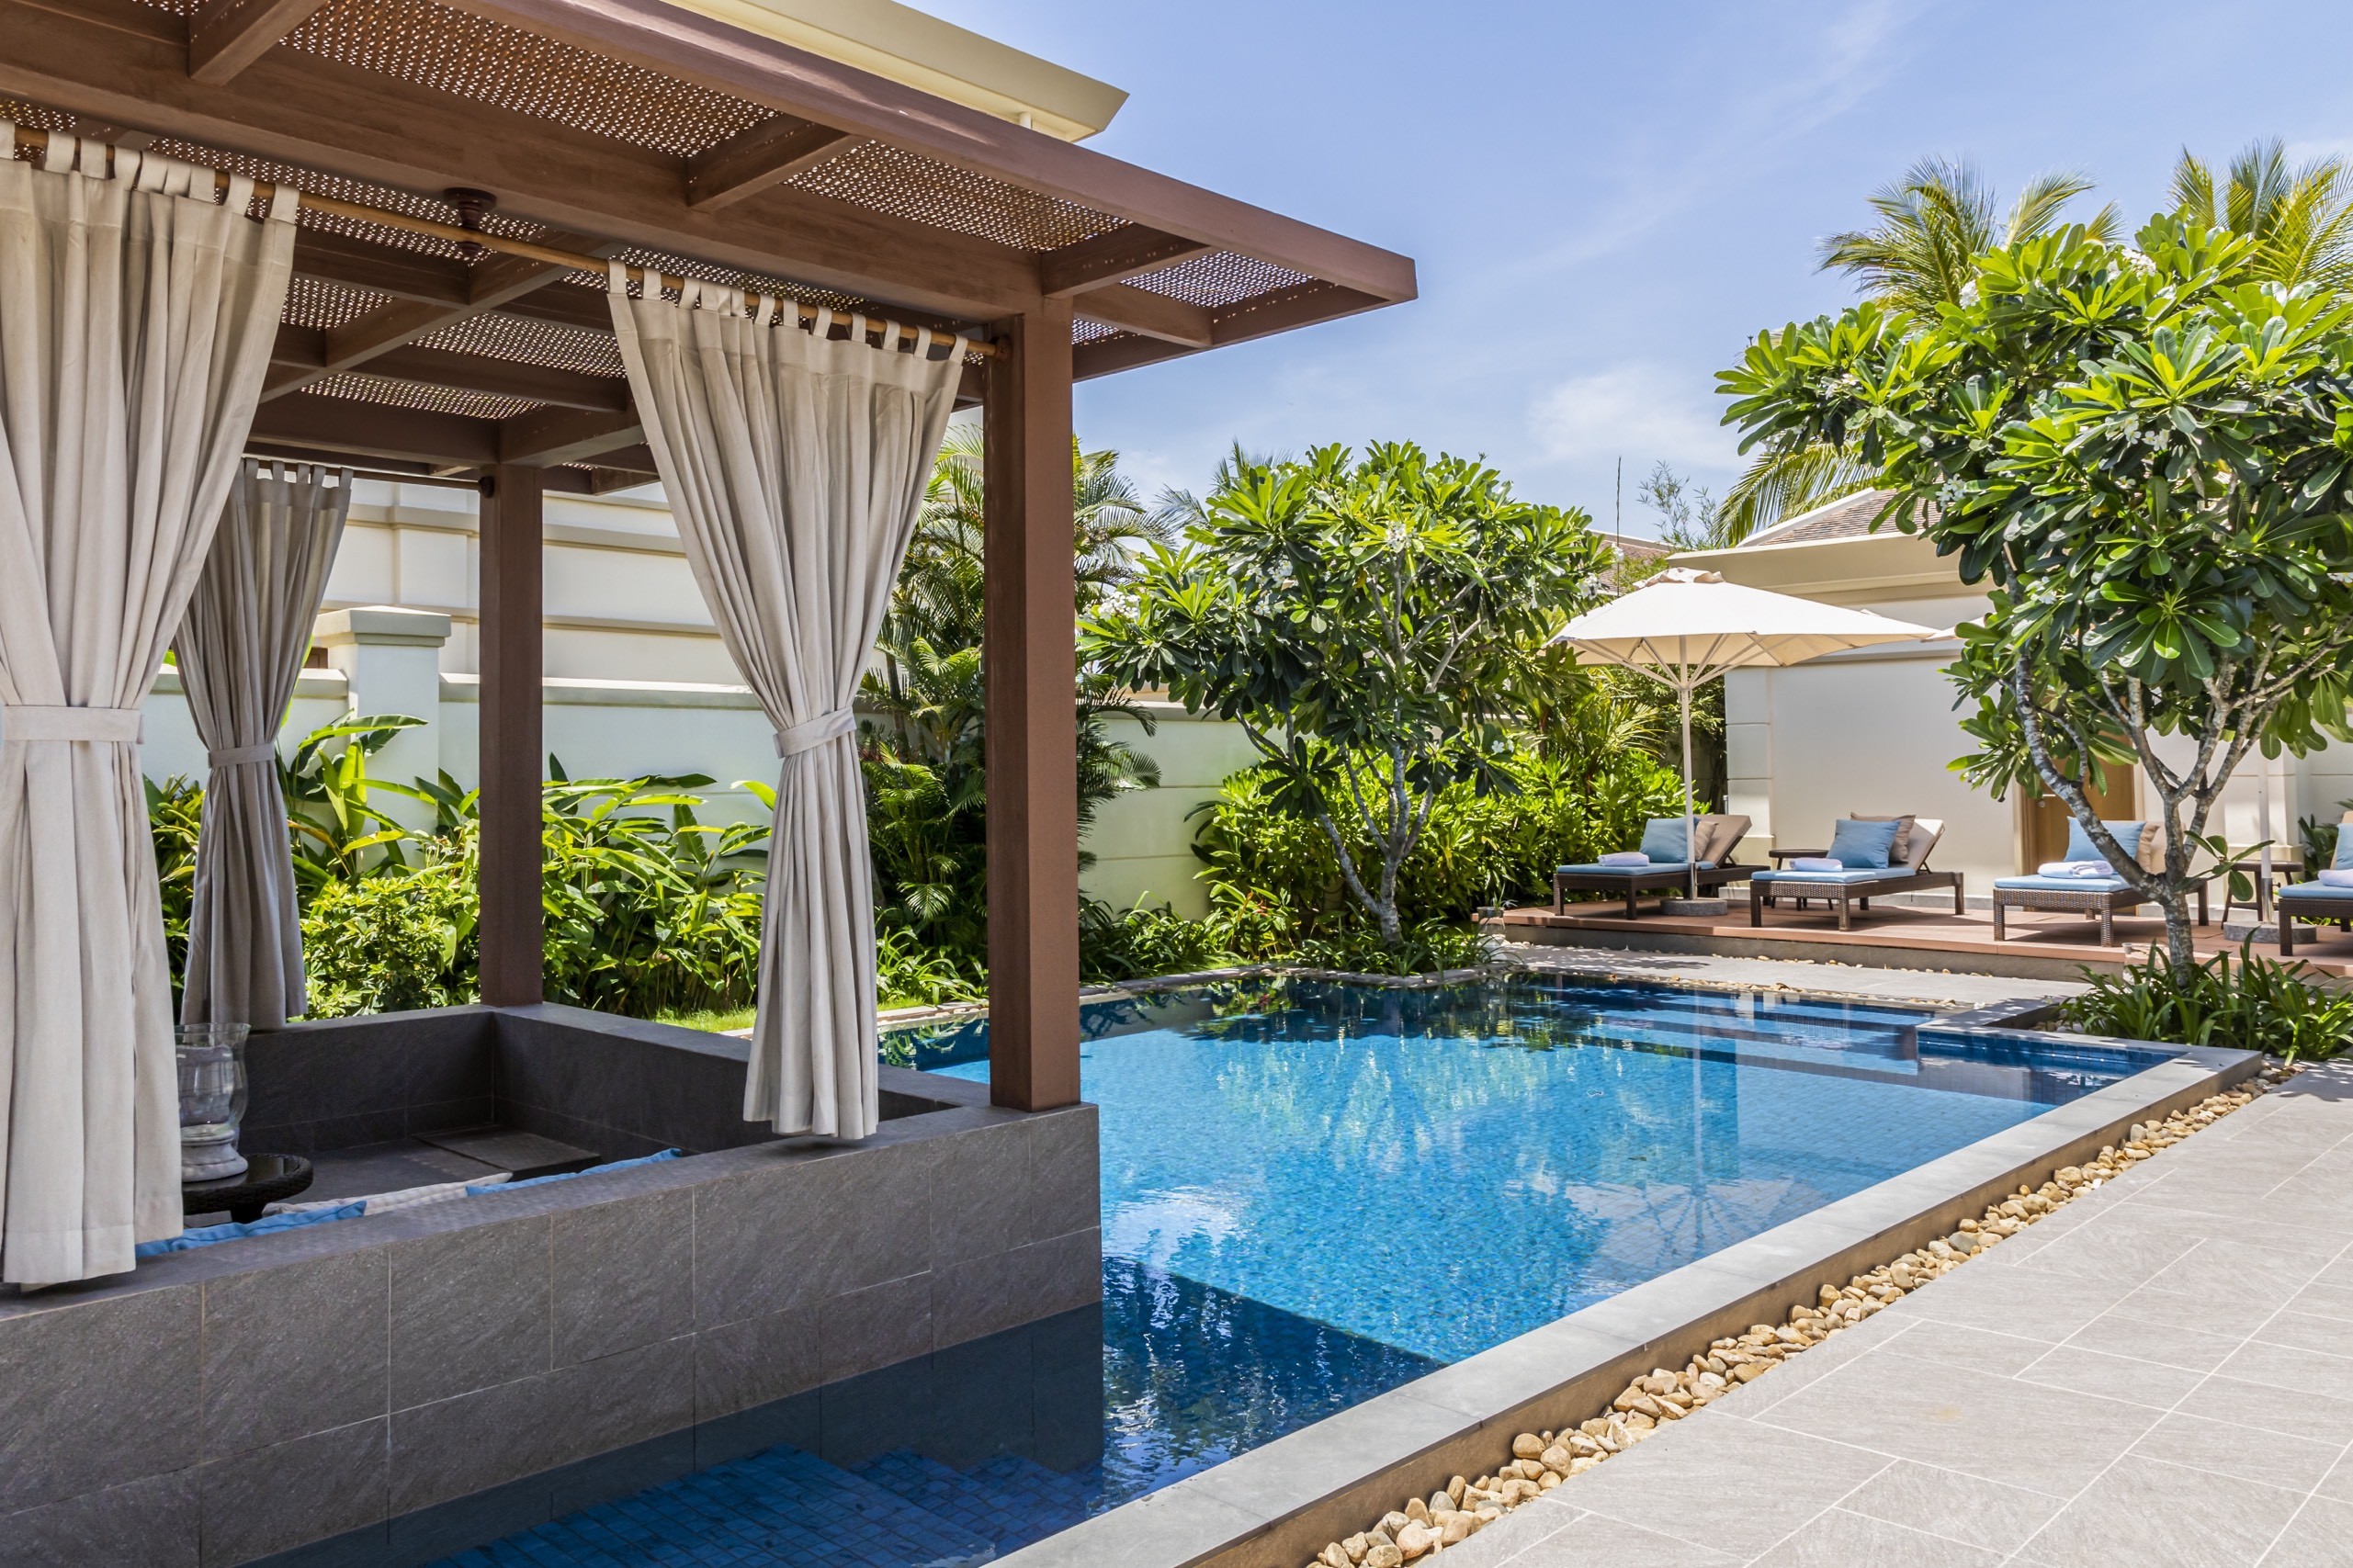 Chỉ 32 tỷ sở hữu ngay căn biệt thự biển 2 phòng ngủ tại bãi biển đẹp nhất dự án Fusion Resort & Villas Đà Nẵng - Lh Hương 0903407925 10